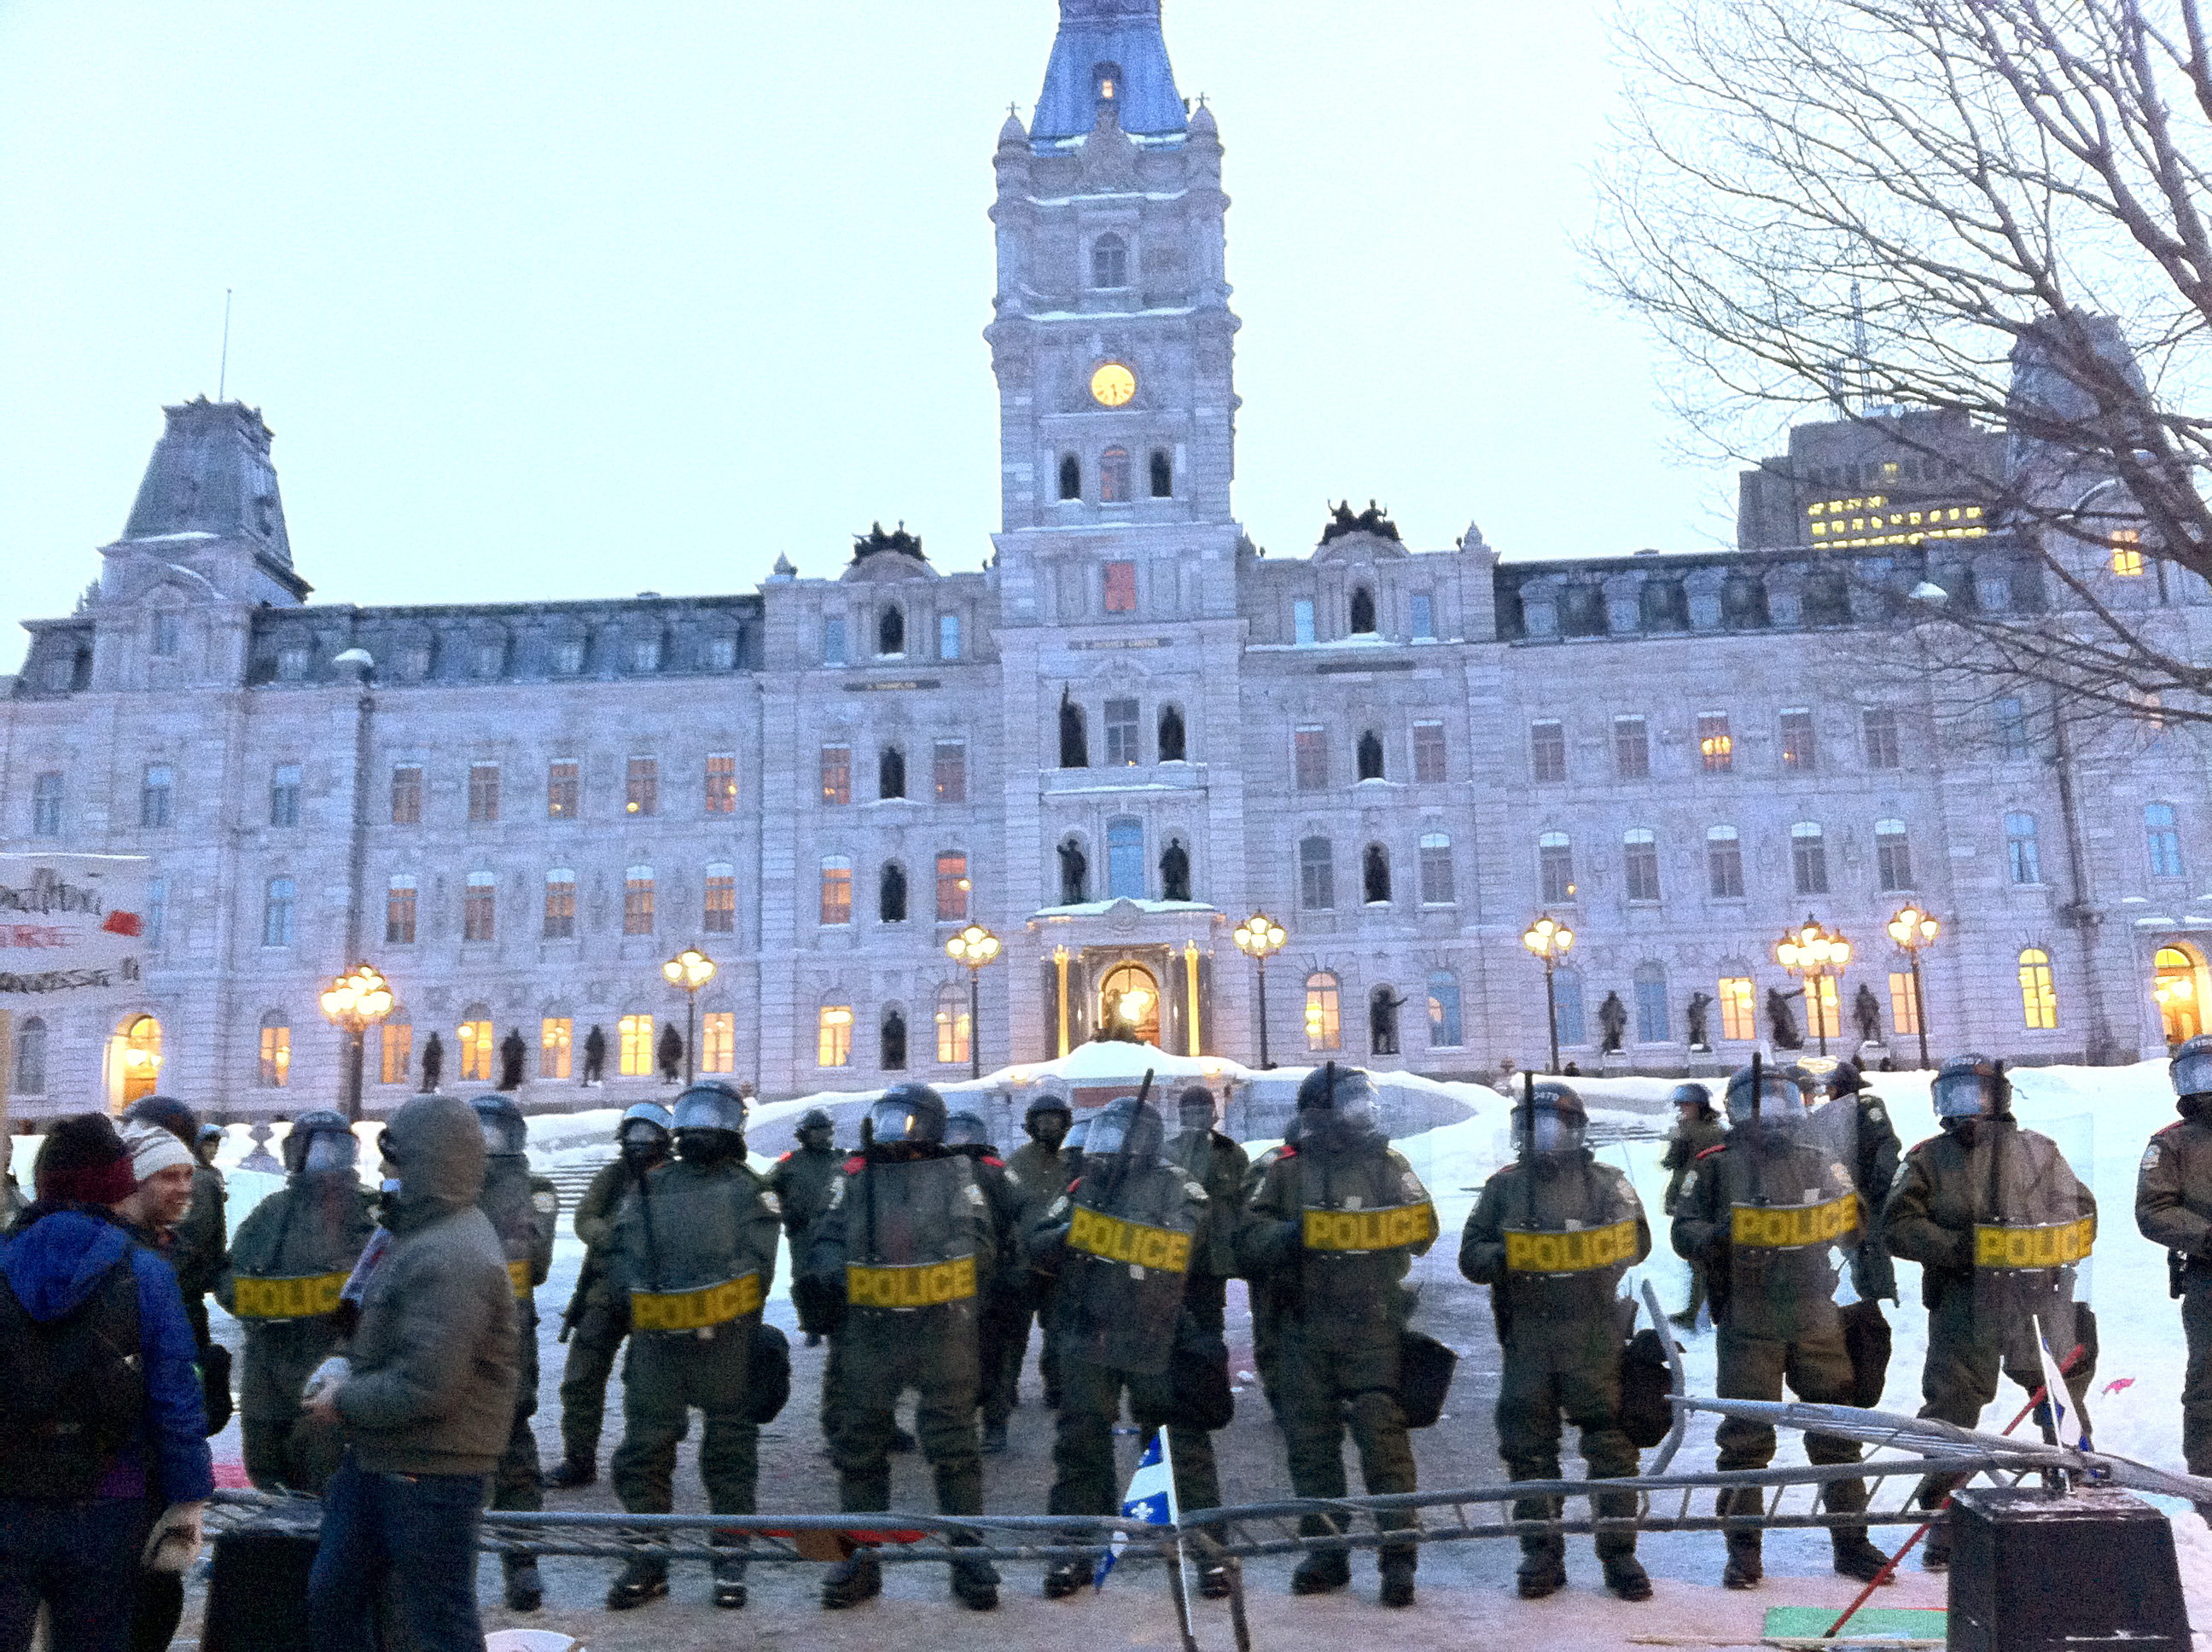 L’Assemblée Nationale du Québec occupée par la police